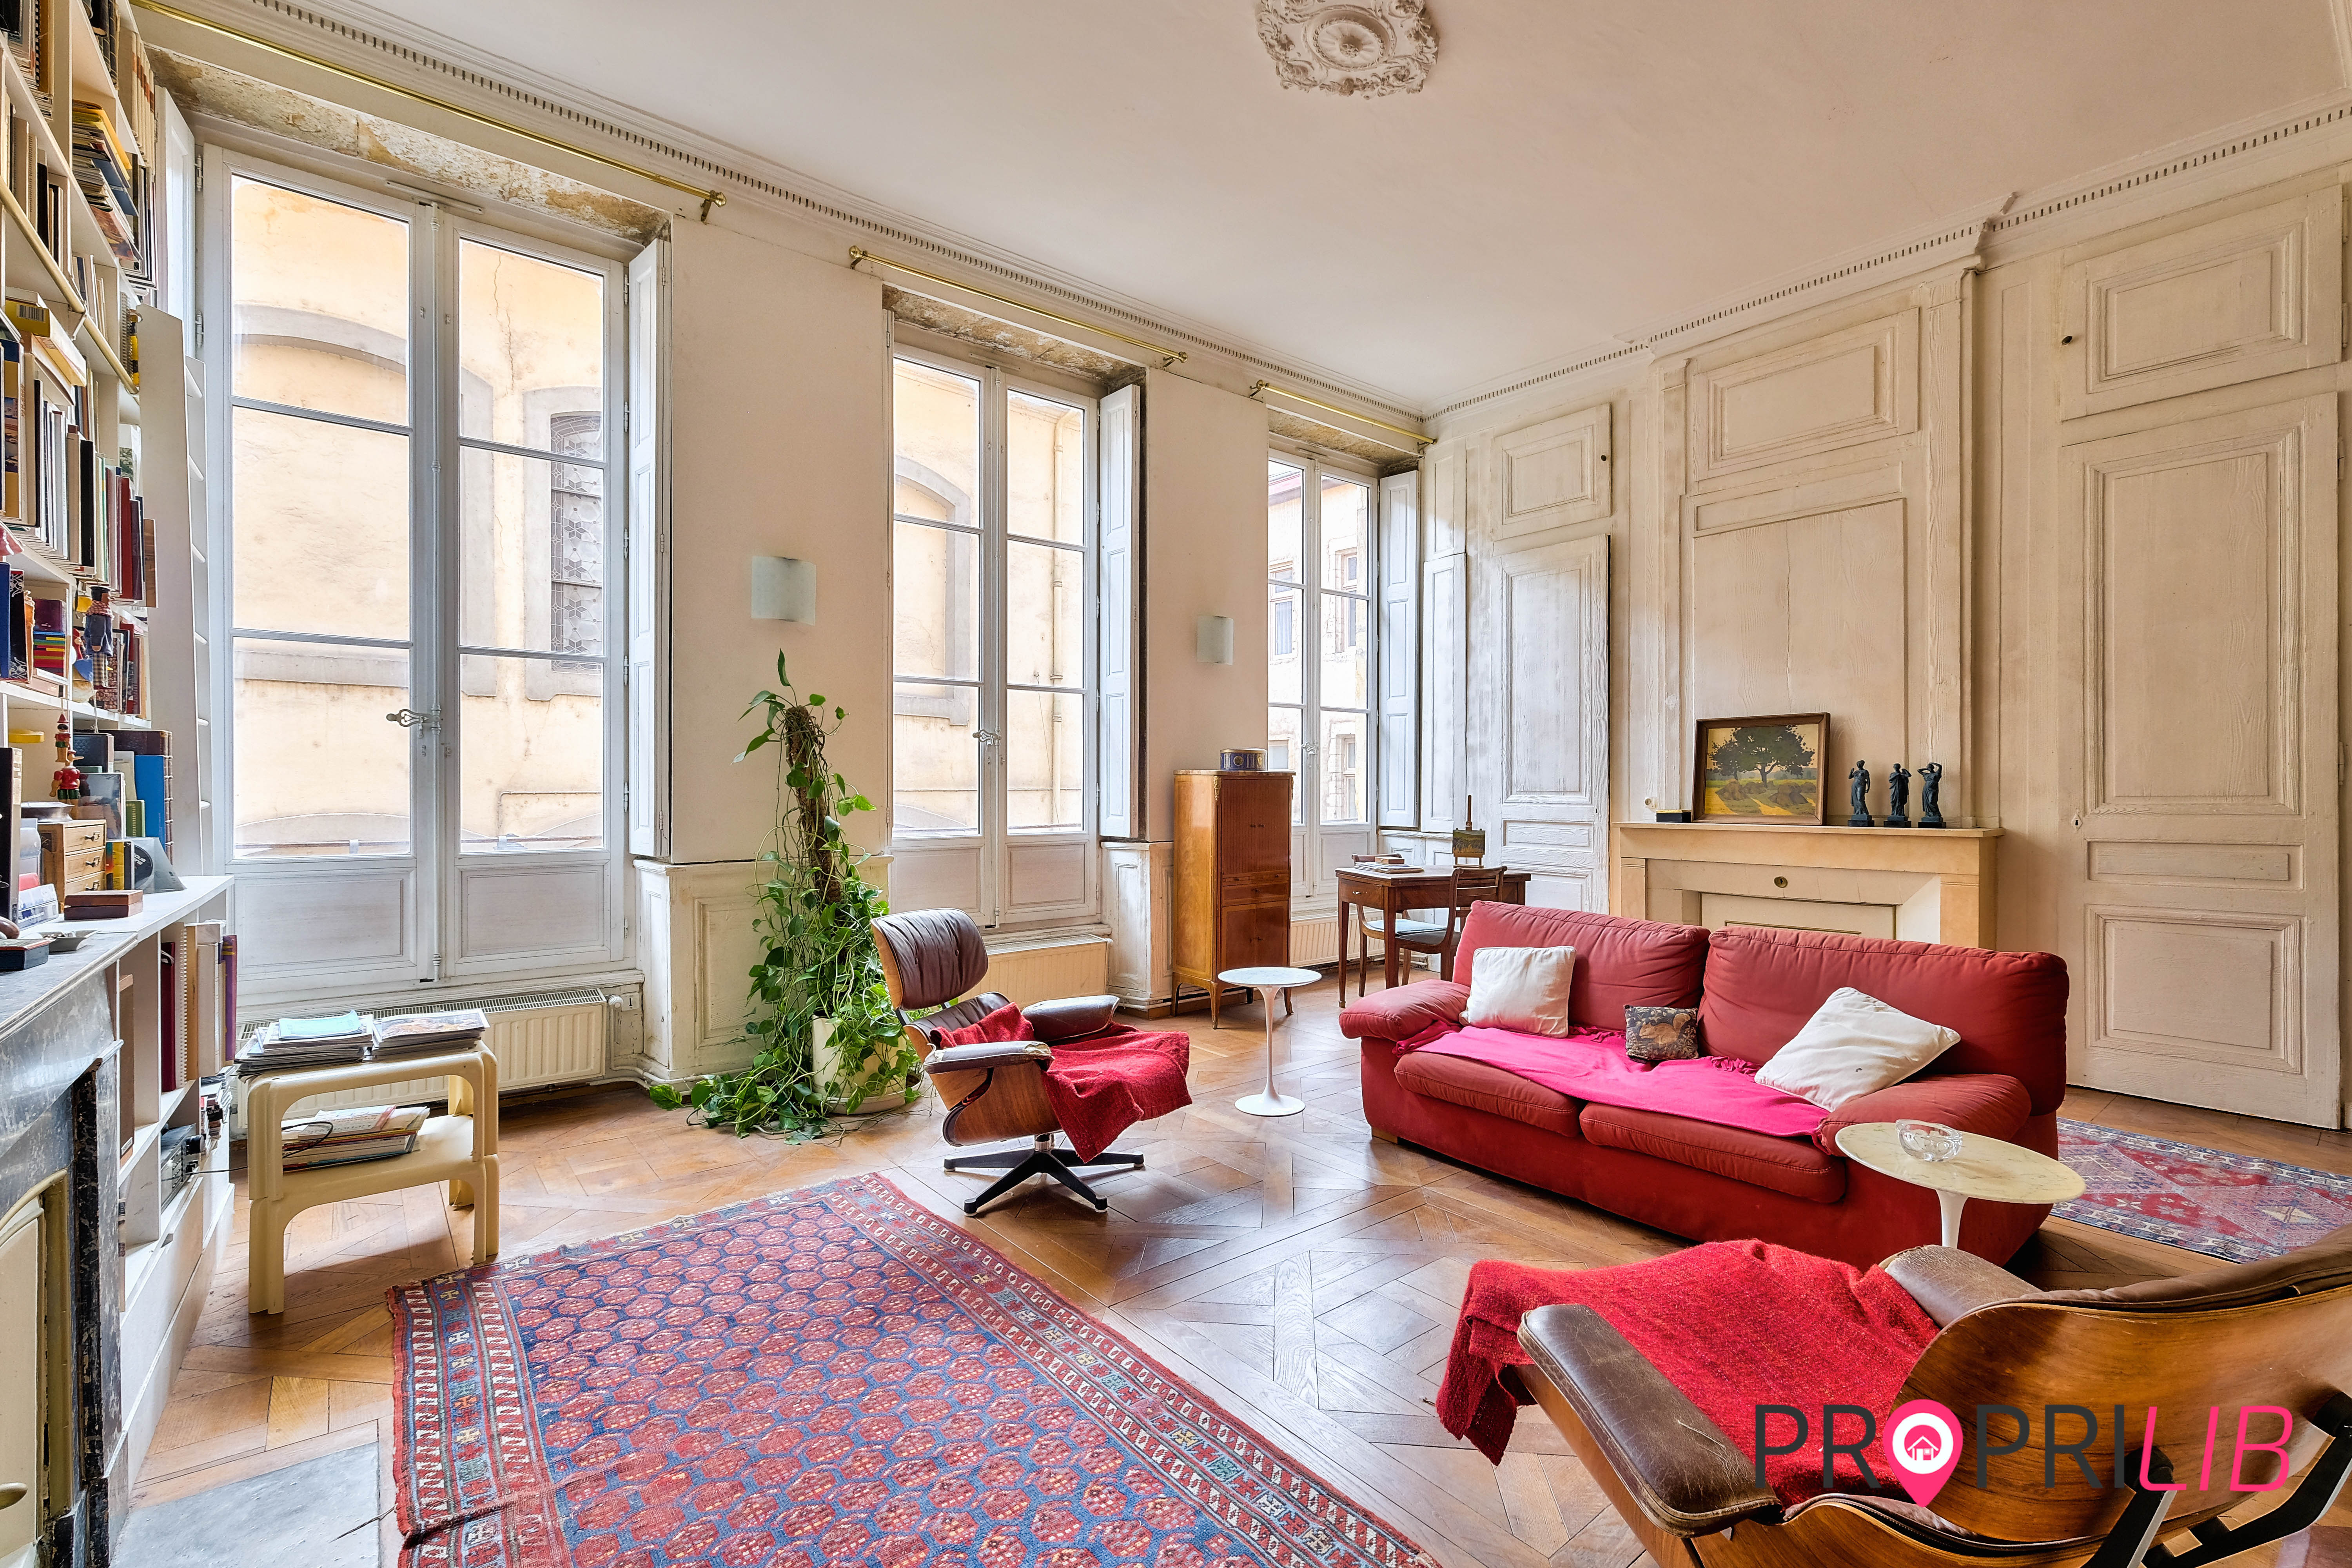 PropriLib l’agence immobilière en ligne à prix fixe vend cet appartement à Lyon 5ème